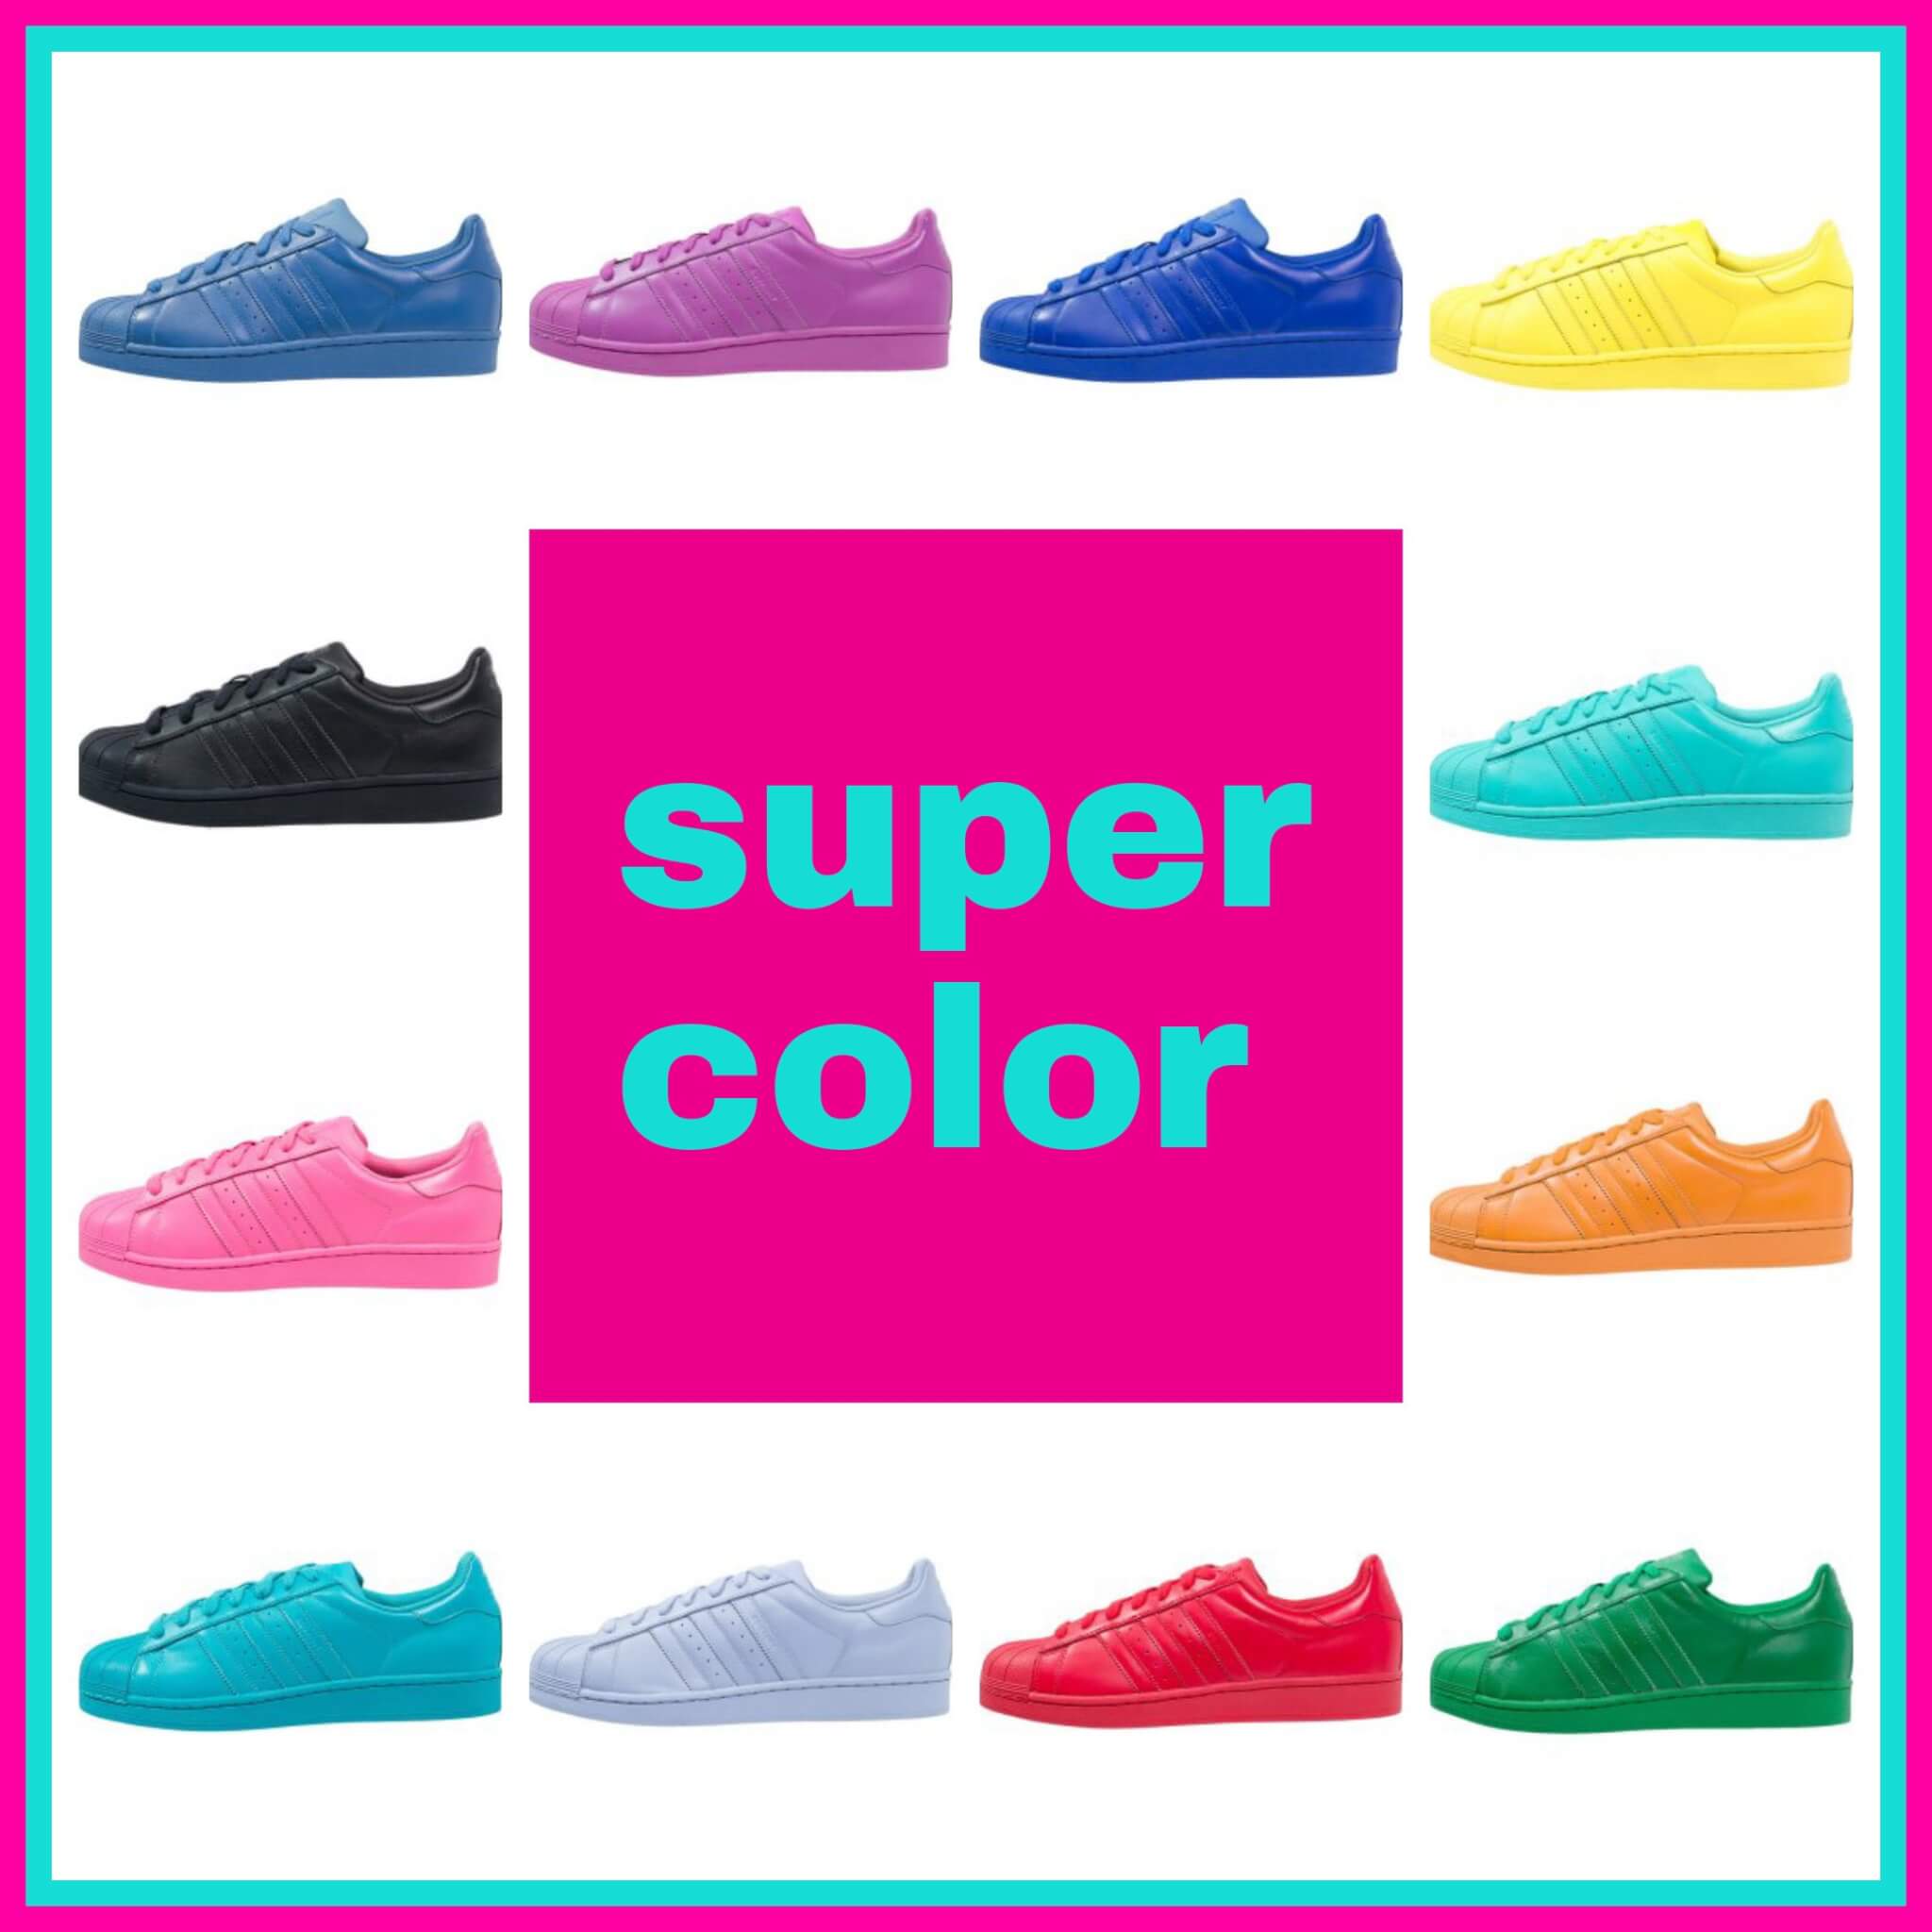 Kalksteen 鍔 Onschuld Supercool: Adidas Superstar Supercolor voor ouders én kids - Leuk met kids  Leuk met kids